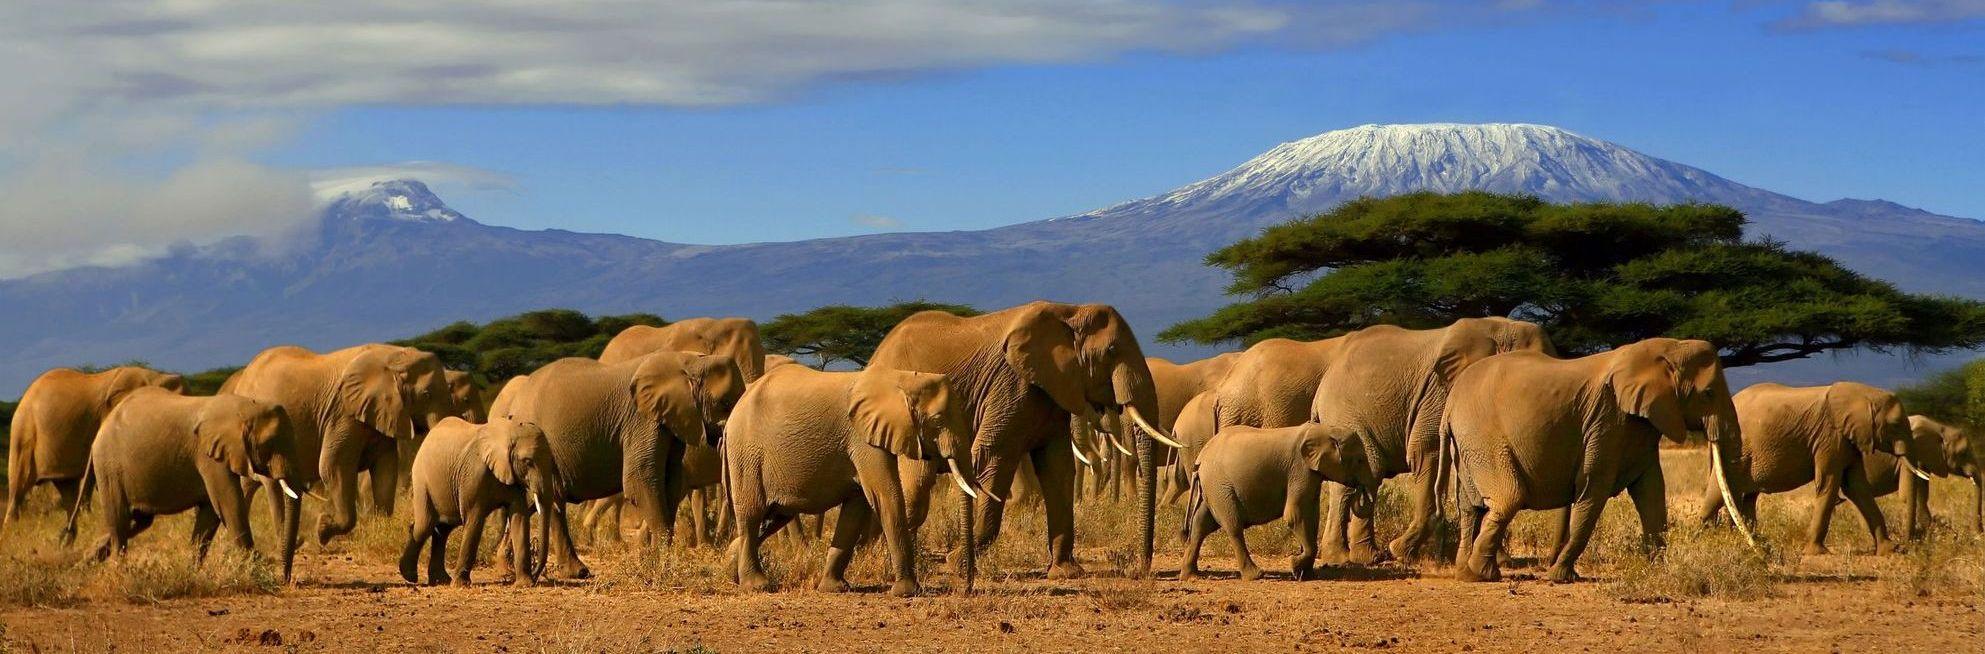 Safari in Kenya. African Safari 2020